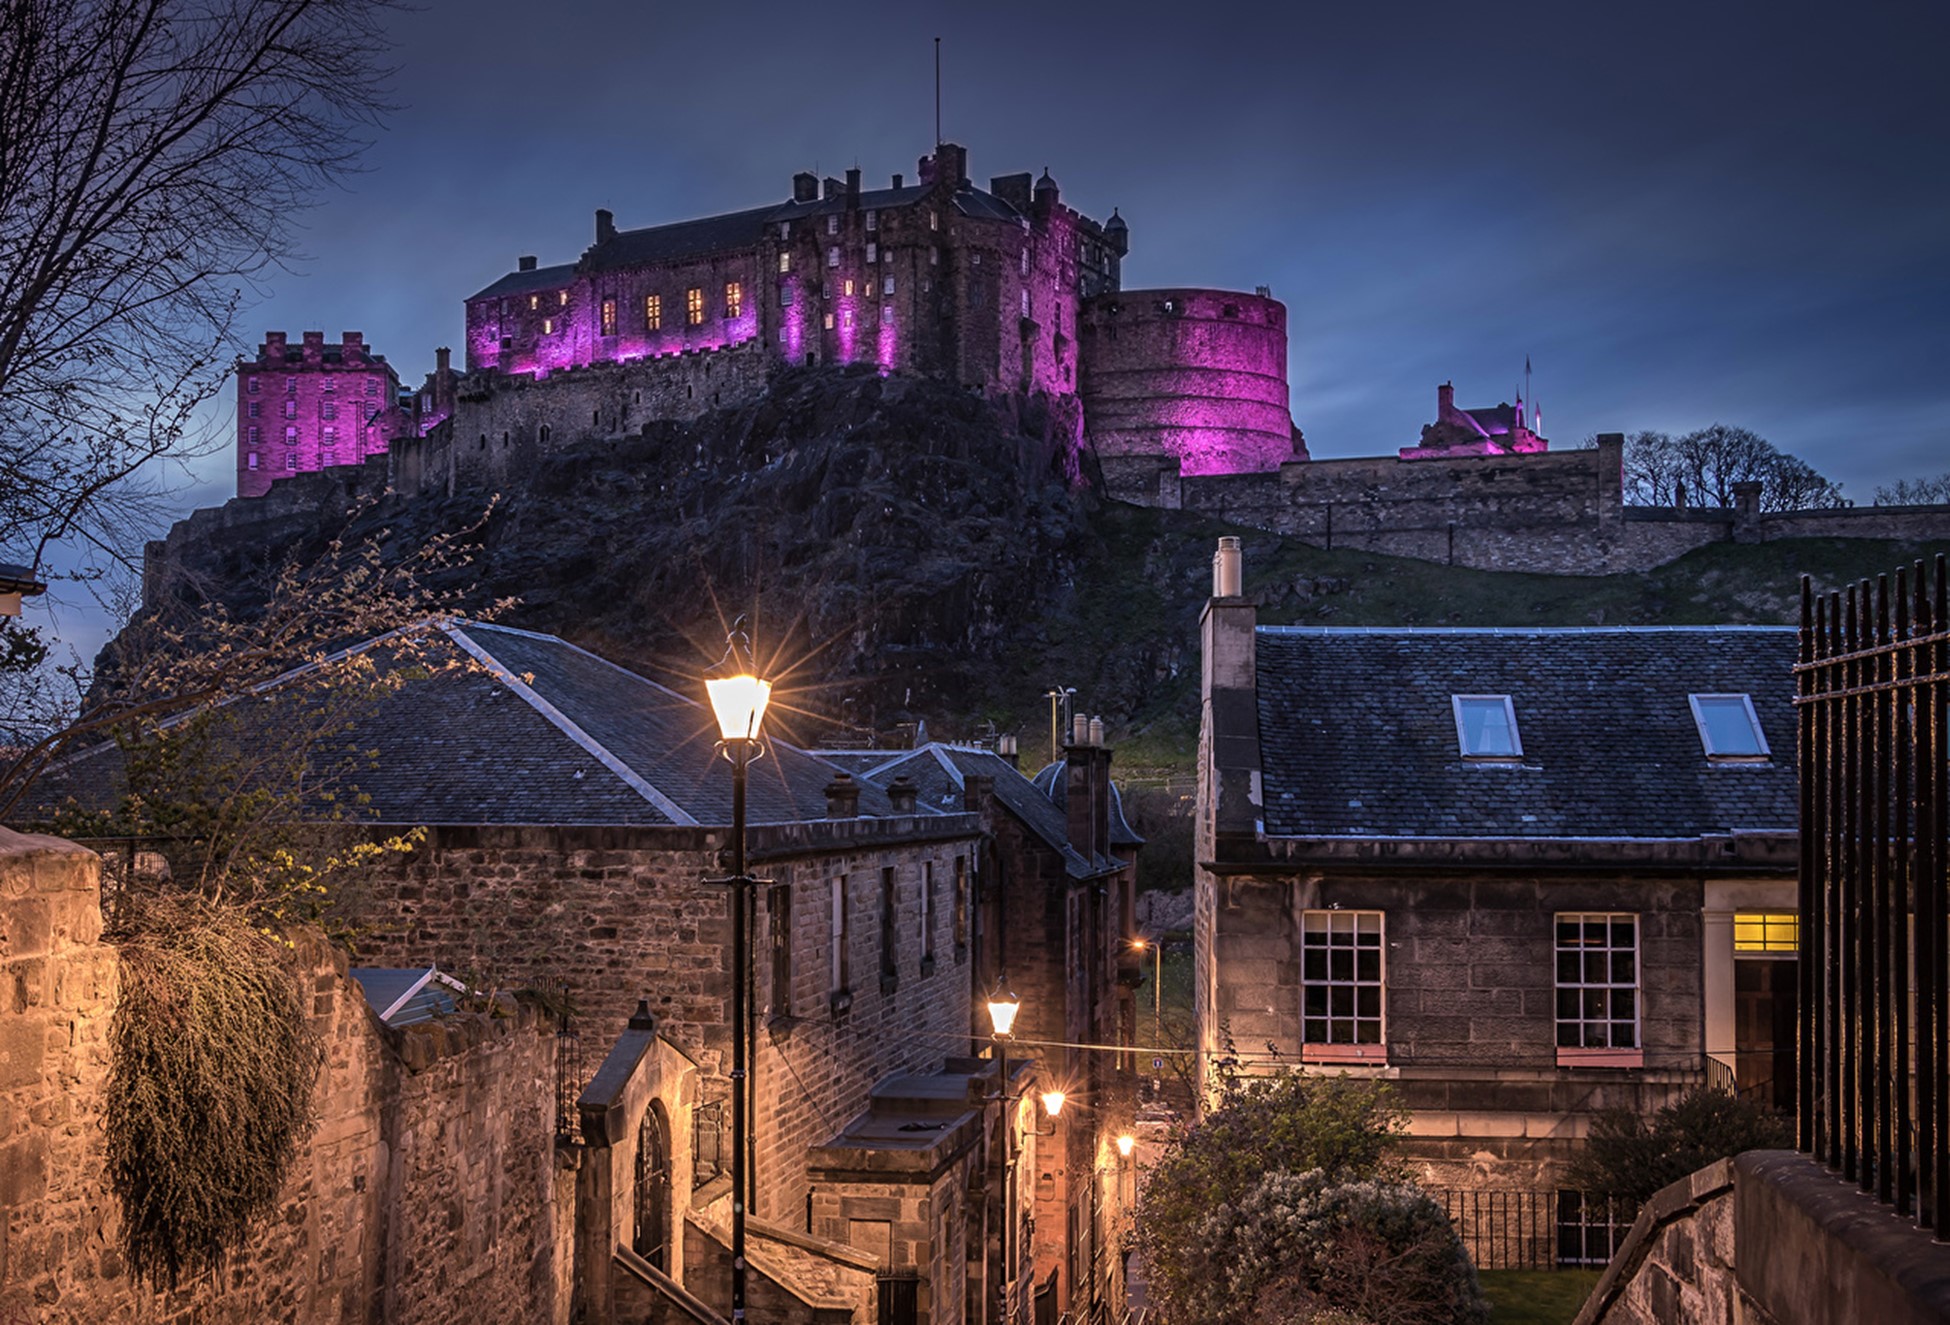 O interpretare frumoasă și caldă a străzilor din cartierul Edinburgh seara, cu vedere captivantă a castelului istoric. Aceasta continuă să servească drept o amintire modernă a trecutului rezistent și plin de spirit al țării.